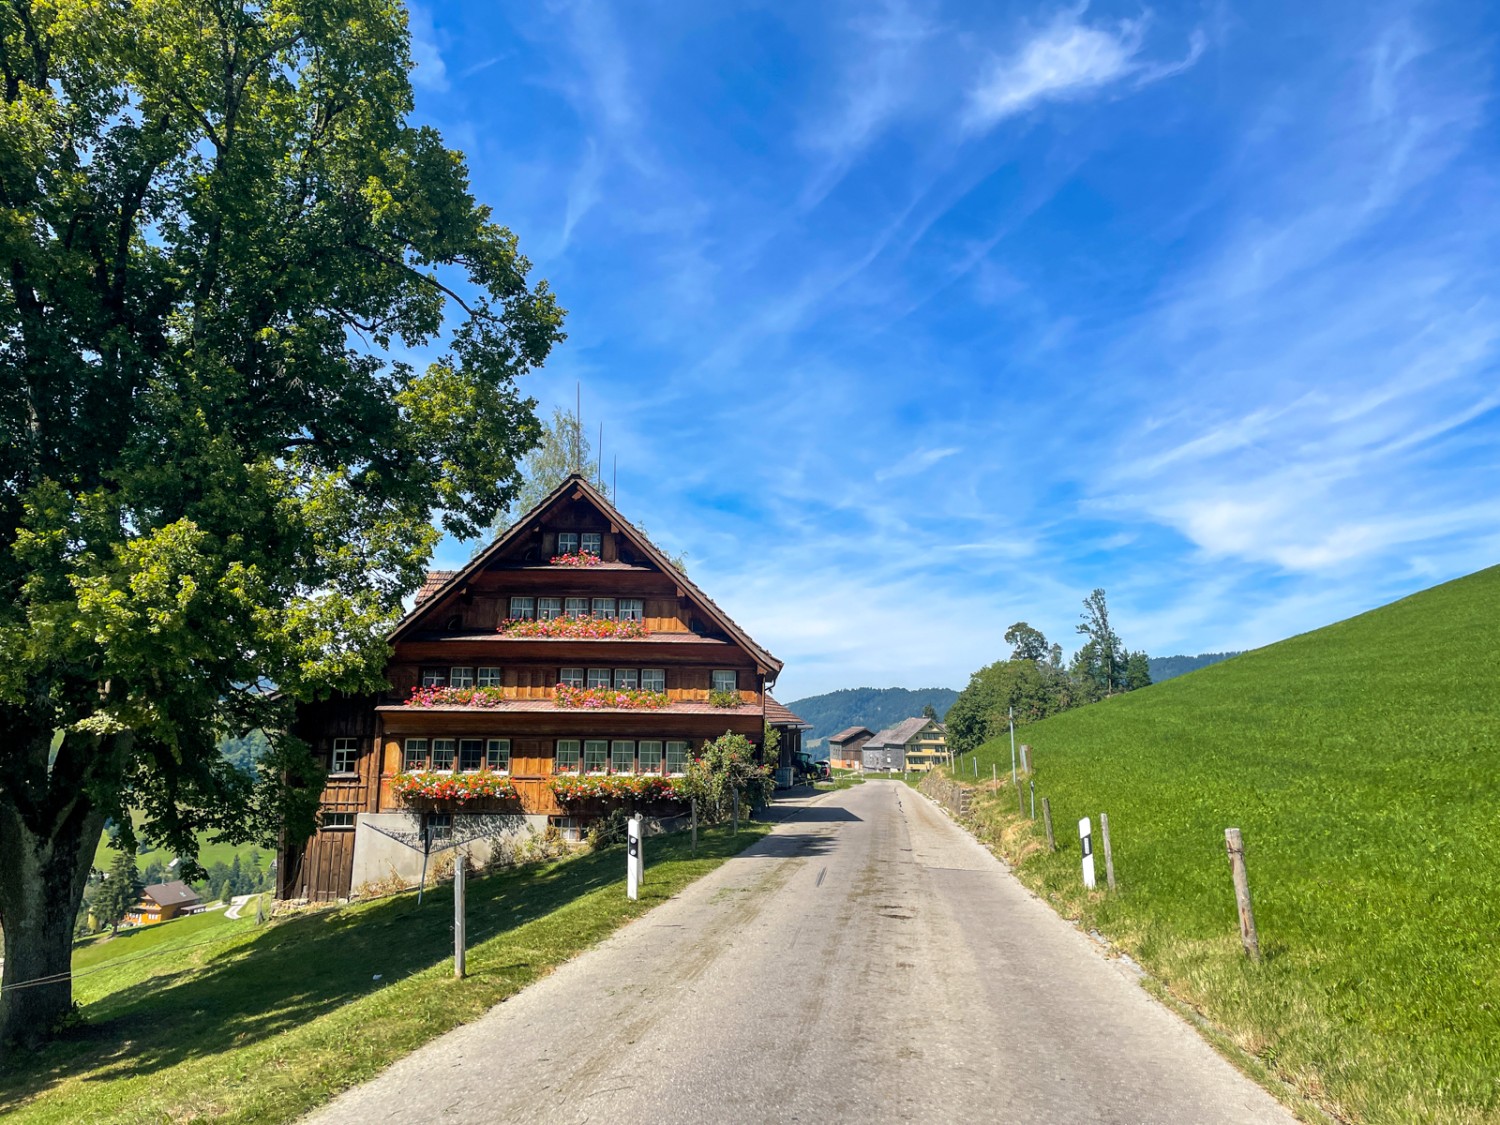 De belles fermes, des arbres fruitiers luxuriants et des routes de campagne paisibles: l’idylle appenzelloise. Photo: Claudia Peter